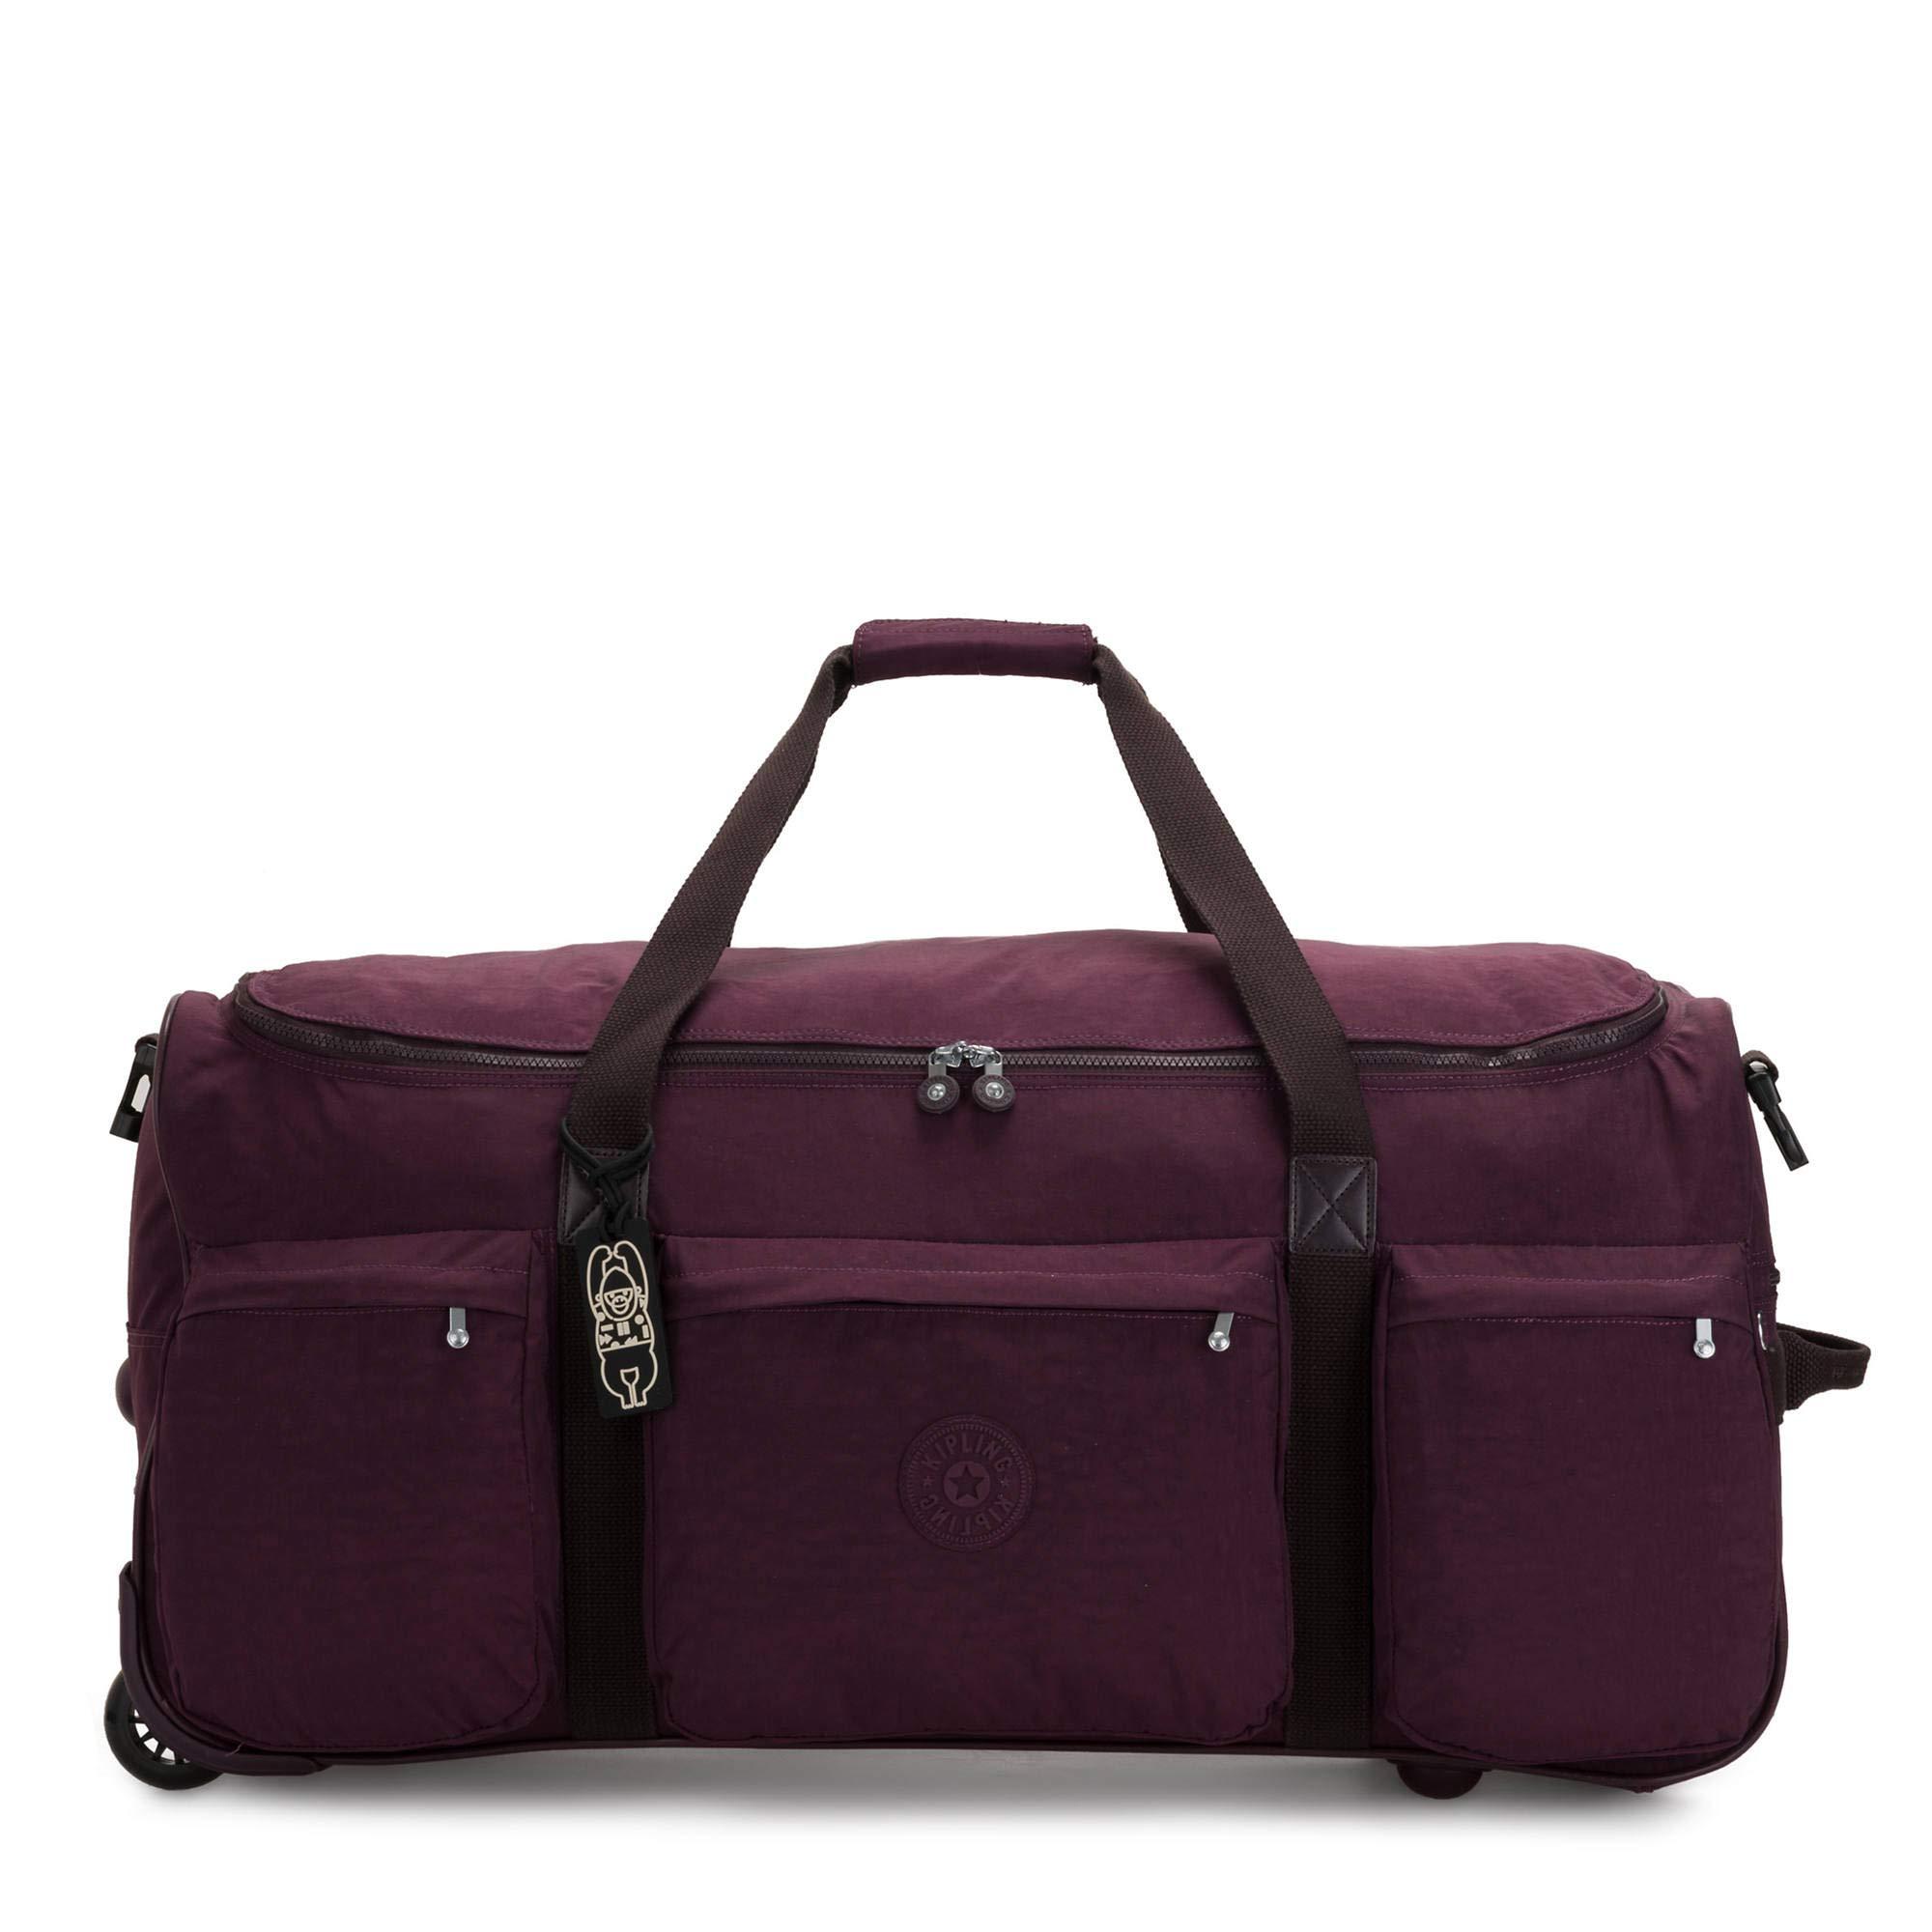 Kipling Synthetic Discover Large Rolling Duffle Weekender Bag in Dark Plum  (Purple) - Lyst